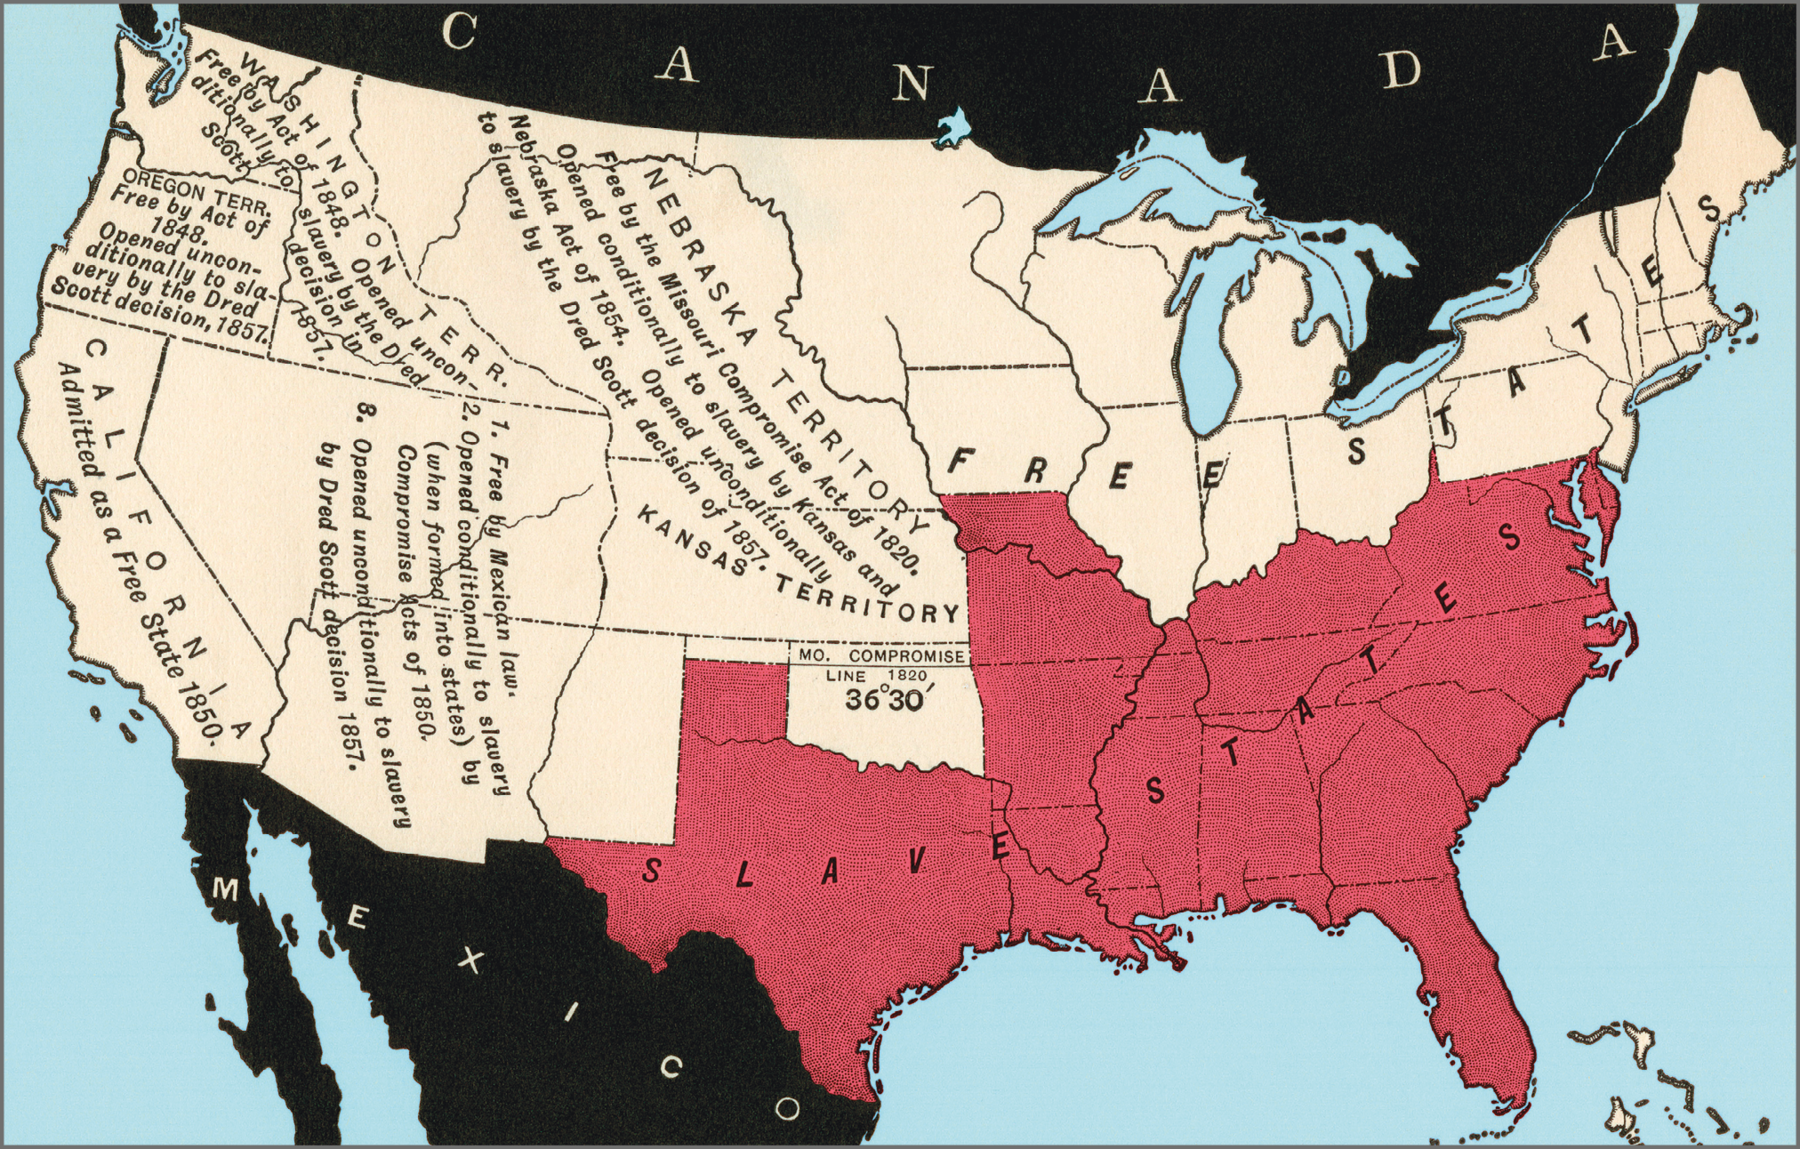 Mapa. Mapa de 1857 representando o território dos Estados Unidos ao centro e o Canadá acima e o México na parte debaixo, ambos representados na cor preta. O território dos Estados Unidos está dividido em oito partes. Em vermelho, as porções sul e sudeste  estão identificadas como Estados escravistas. O nordeste e o norte, no entorno da região dos Grandes Lagos, compõem uma área identificada como Estados livres. A porção central do território é identificada como Território do Nebraska e Território do Kansas. Mais a oeste estão Califórnia, Território de Washington e Óregon.